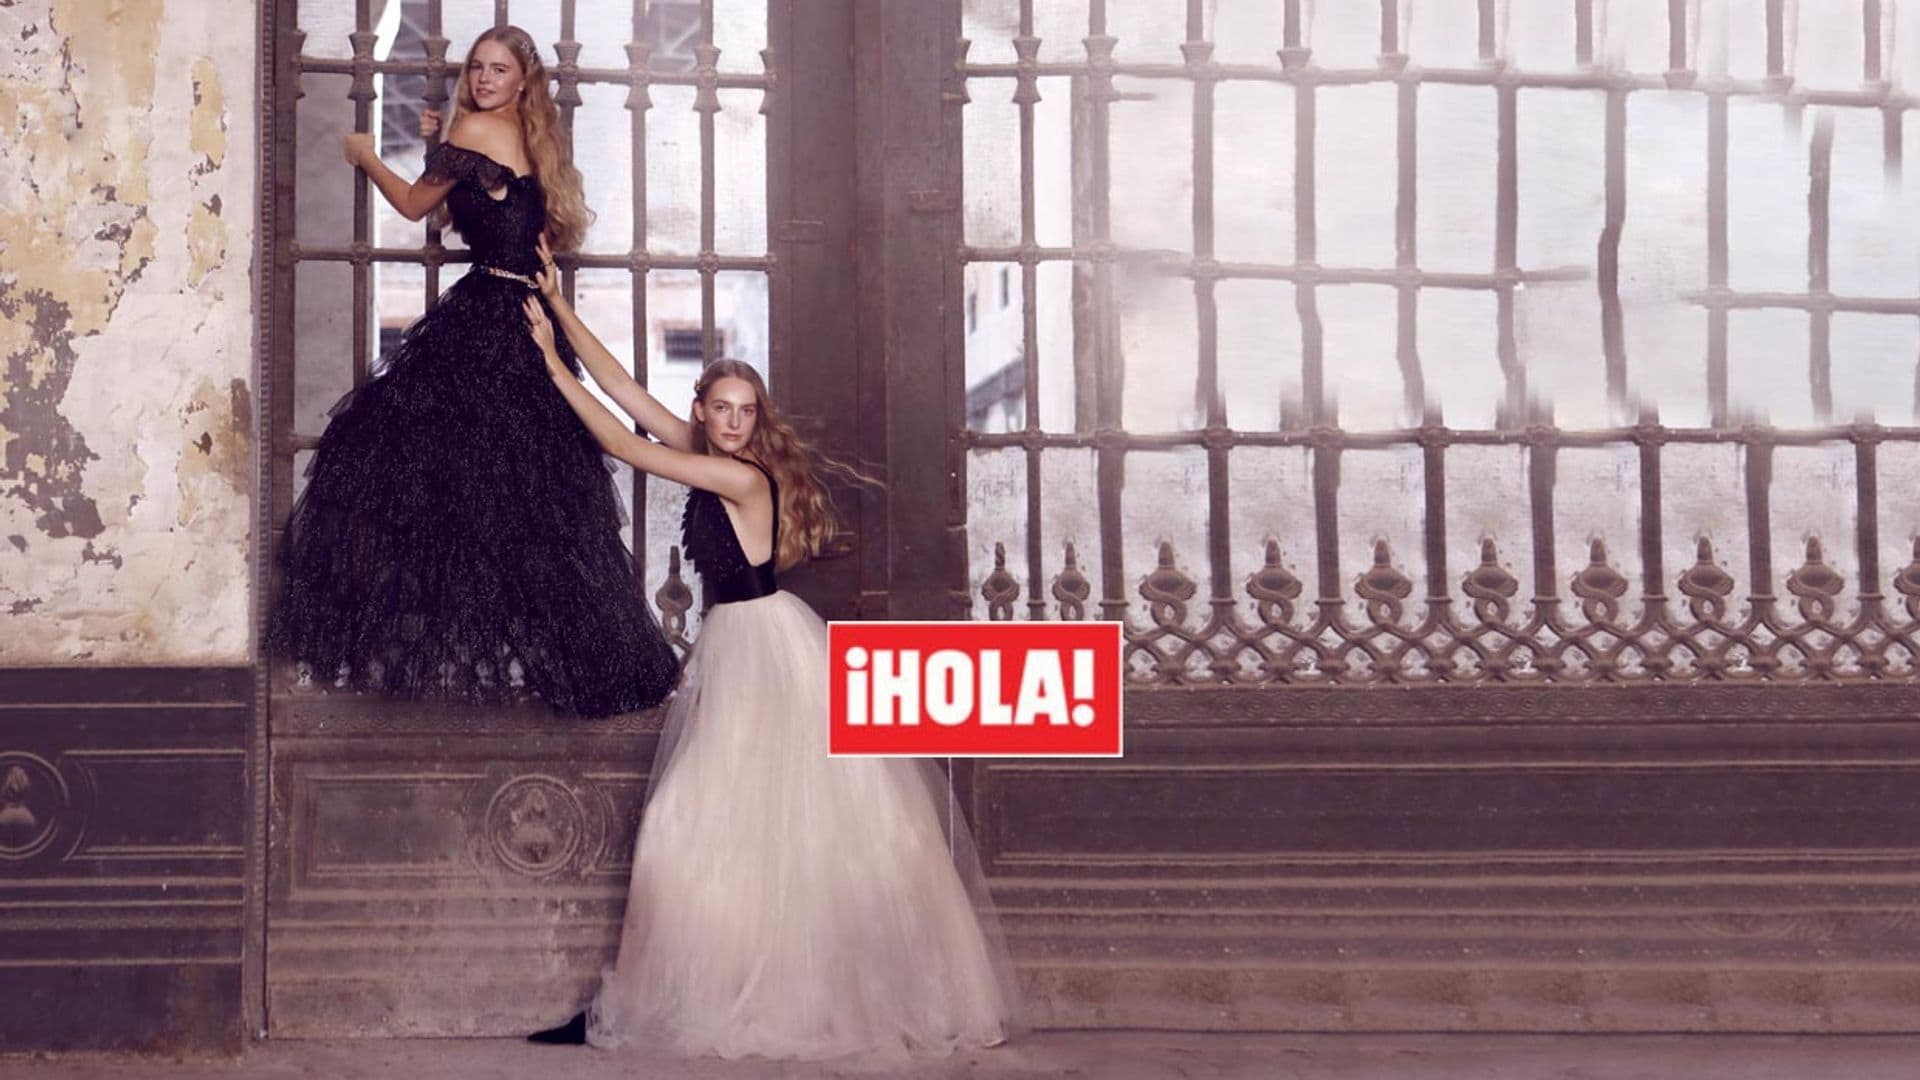 En ¡HOLA!, las princesas Sofía e Ildiko de Habsburgo posan por primera vez como modelos